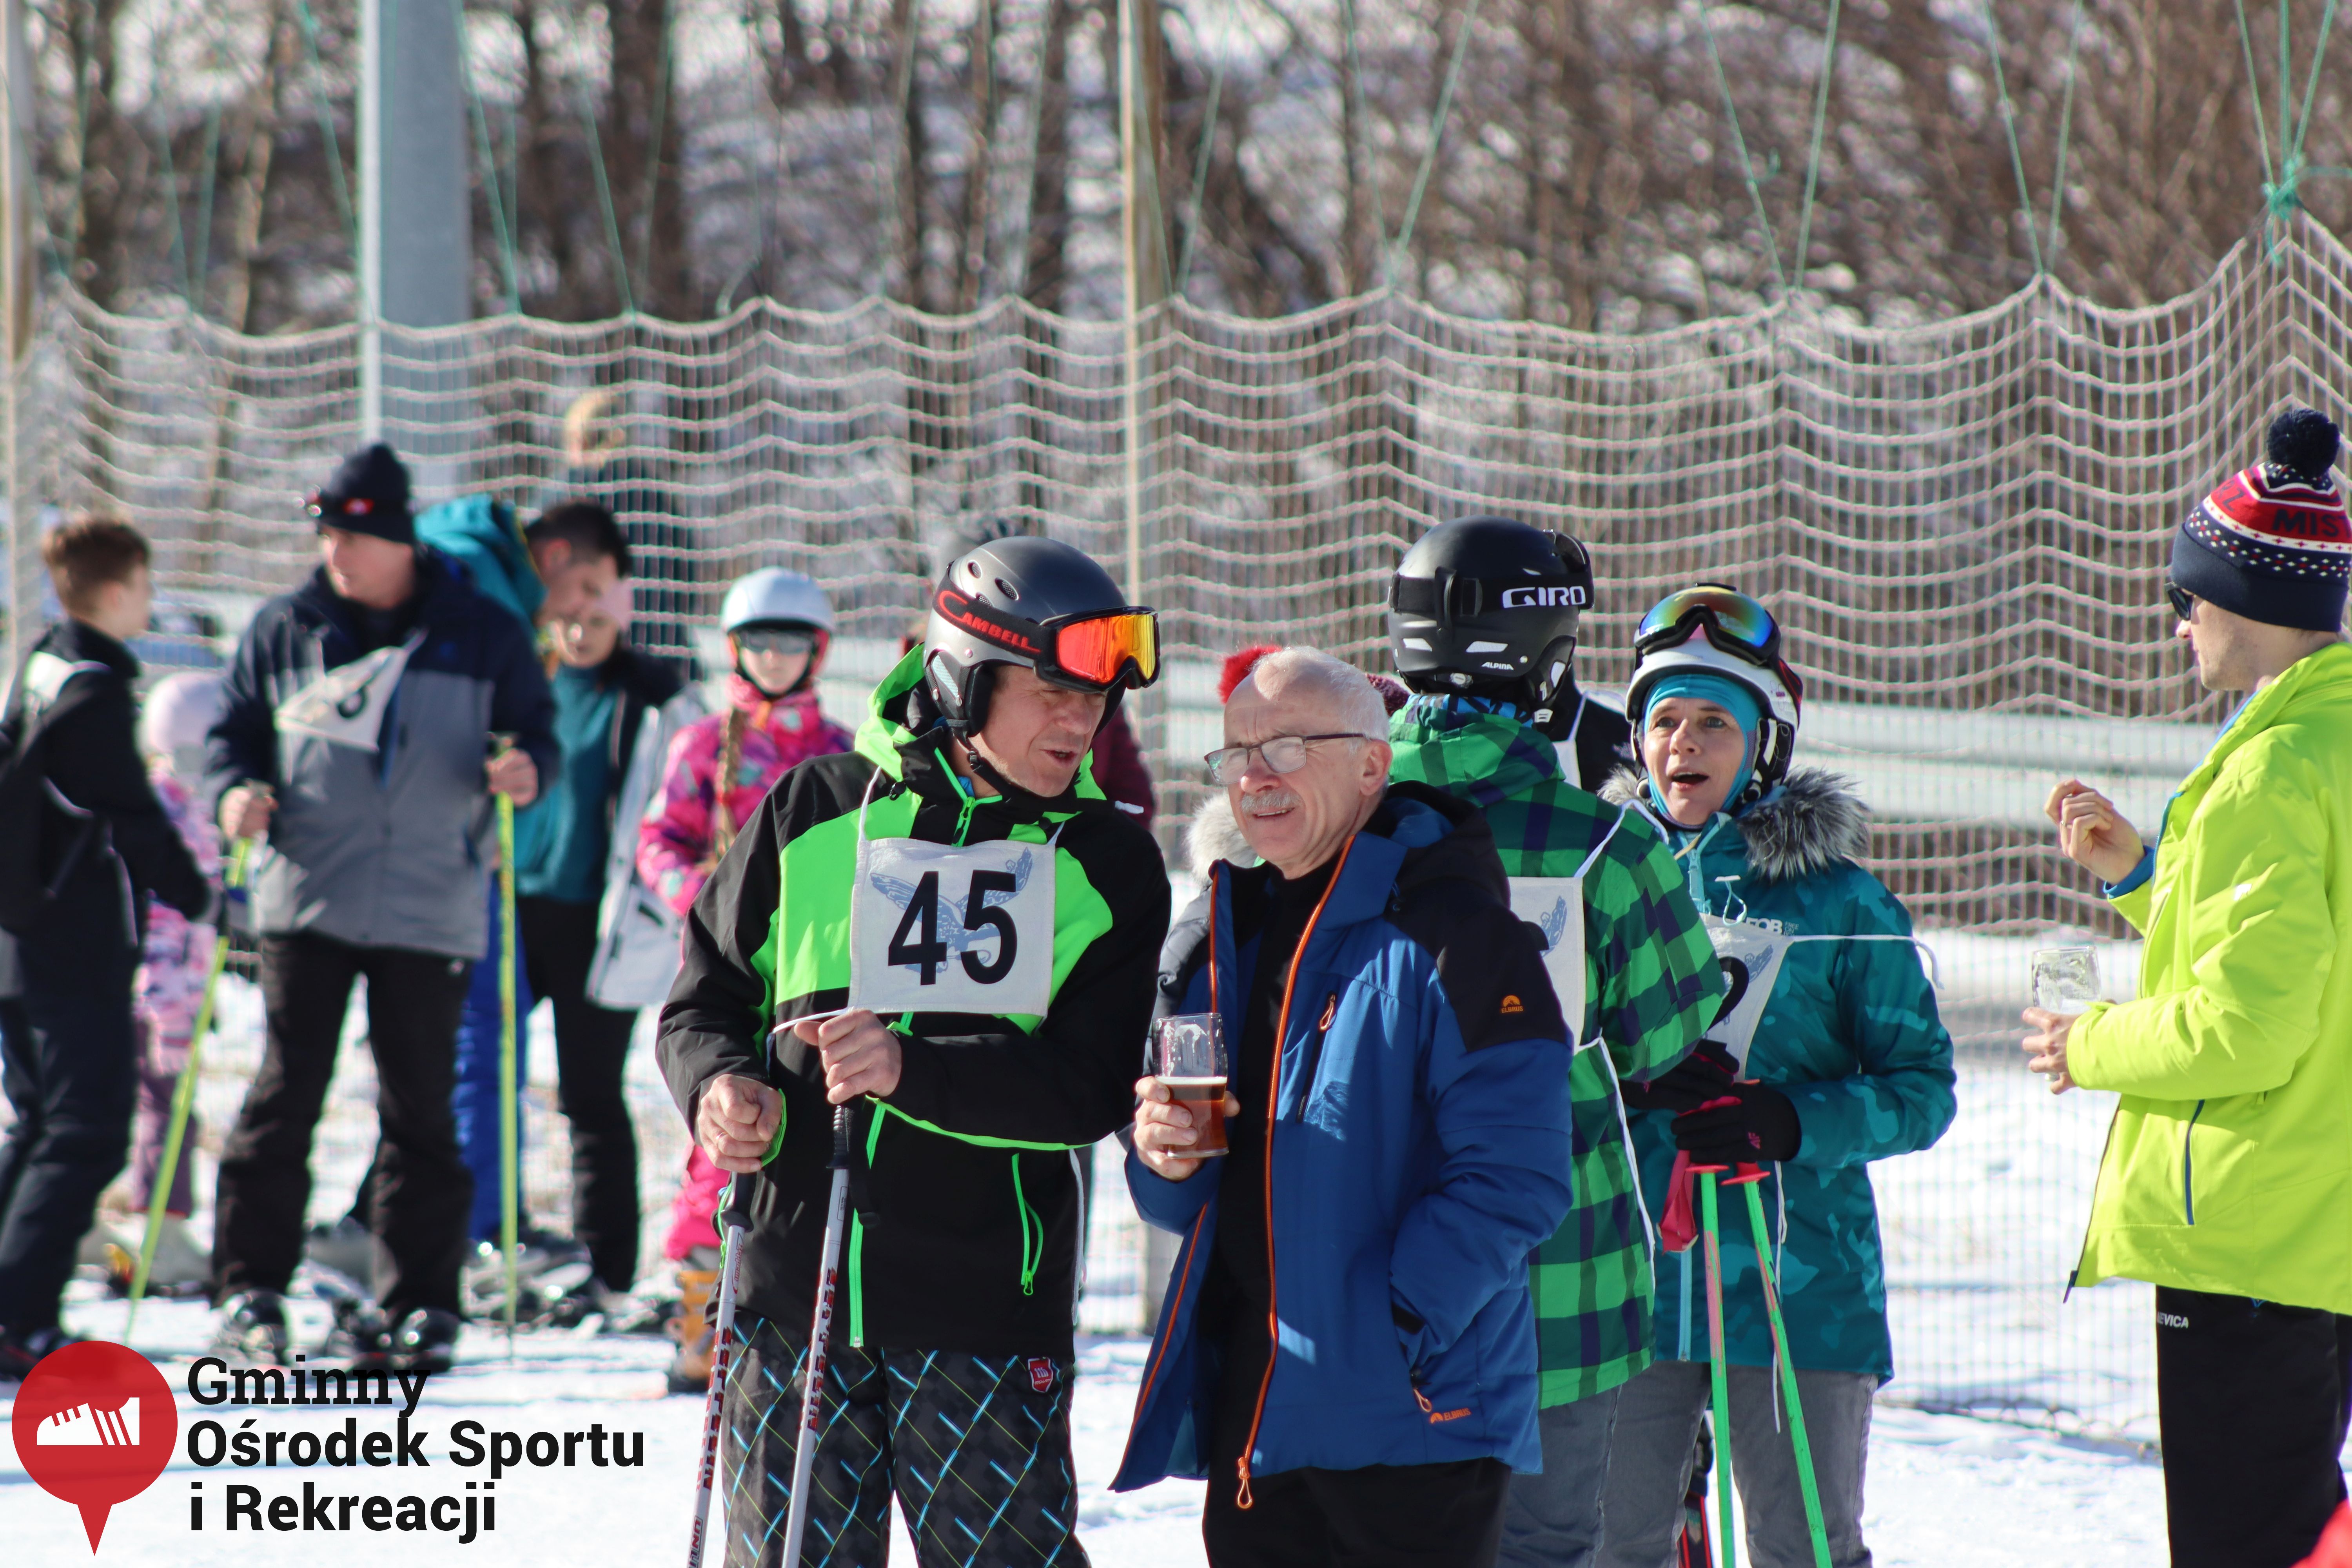 2022.02.12 - 18. Mistrzostwa Gminy Woszakowice w narciarstwie082.jpg - 2,00 MB